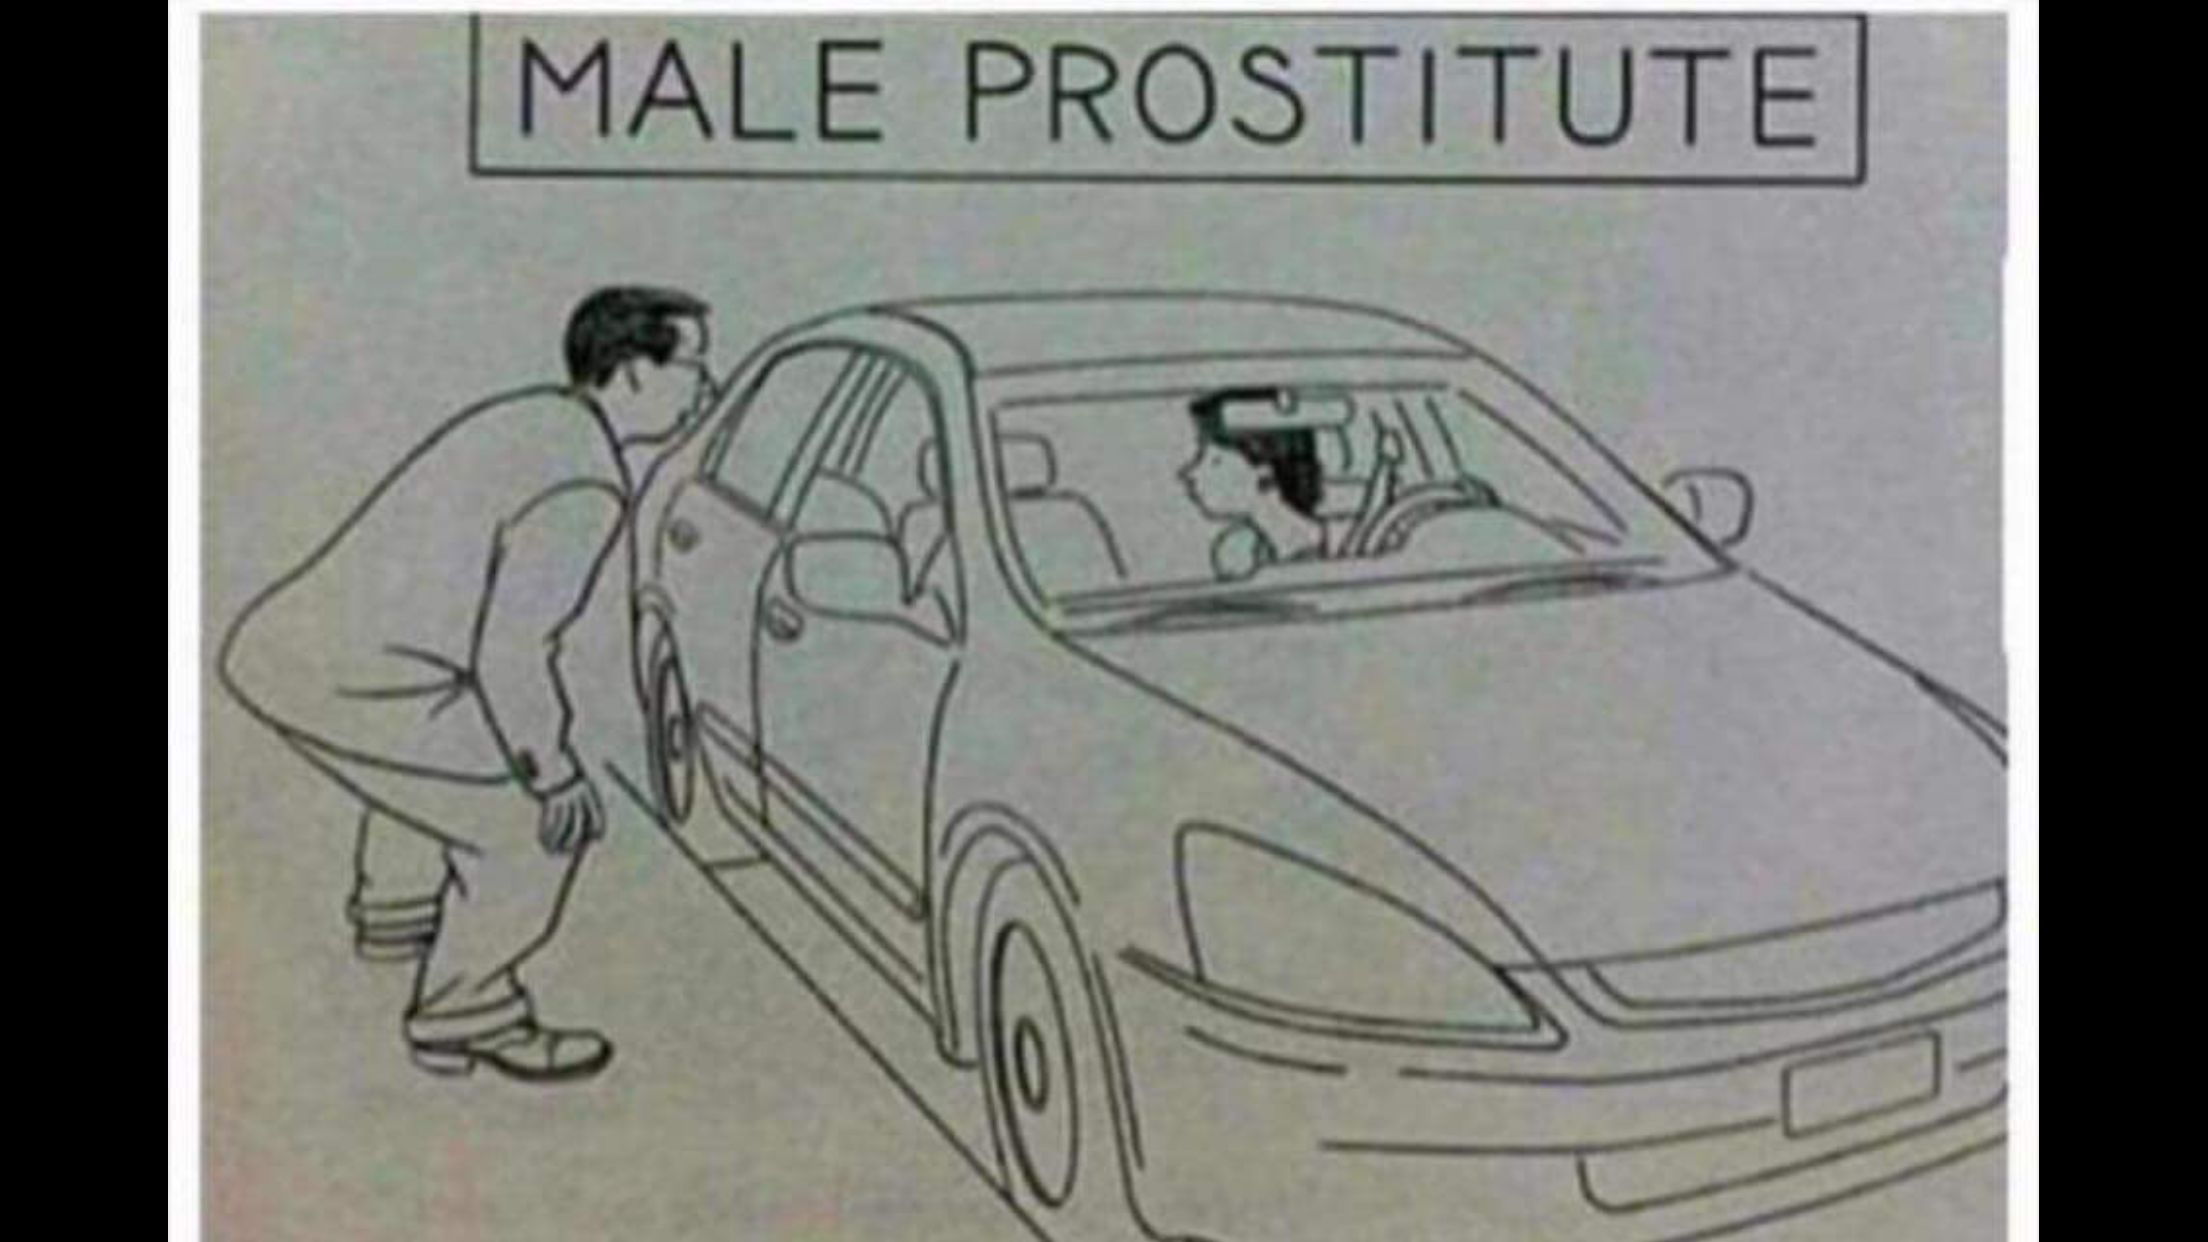 Male prostitute car Blank Meme Template